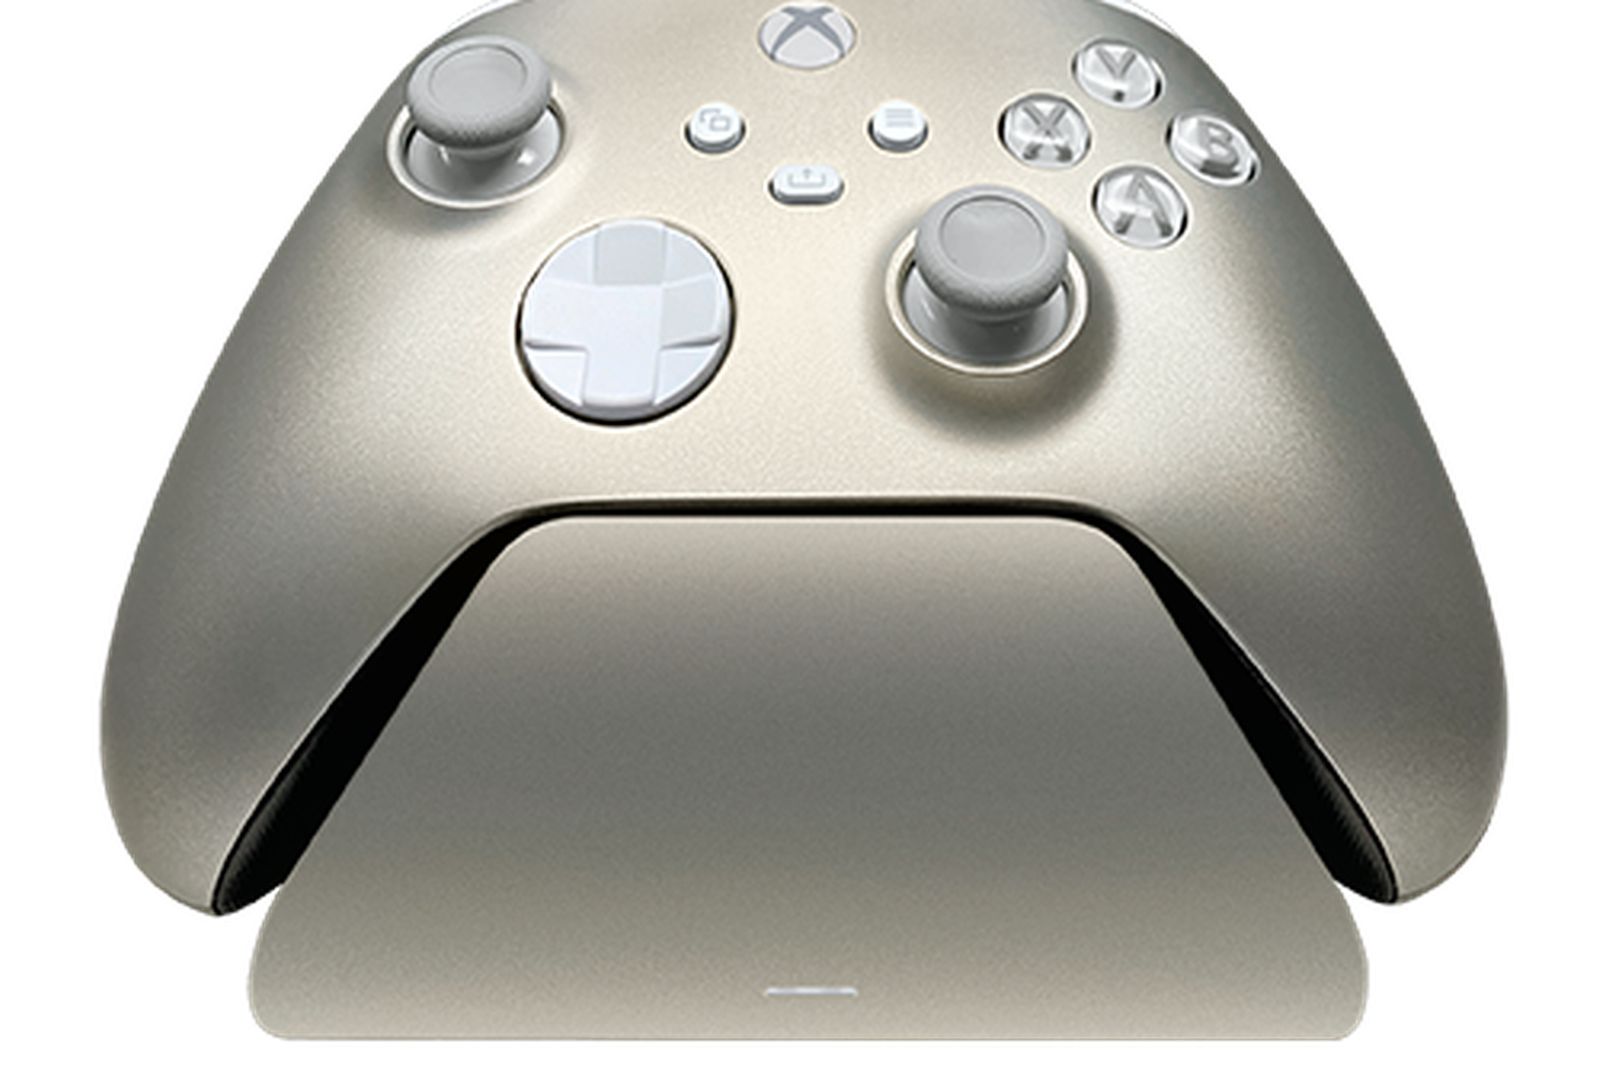 Razer Universelle Schnellladestation für Xbox Controller - (Universelle Kompatibilität, Magnetkontaktsystem, Passend zu jedem Xbox-Controller, Einhändige Navigation) Lunar Shift Universelle Schnellladestation für Xbox Lunar Shift Ed.